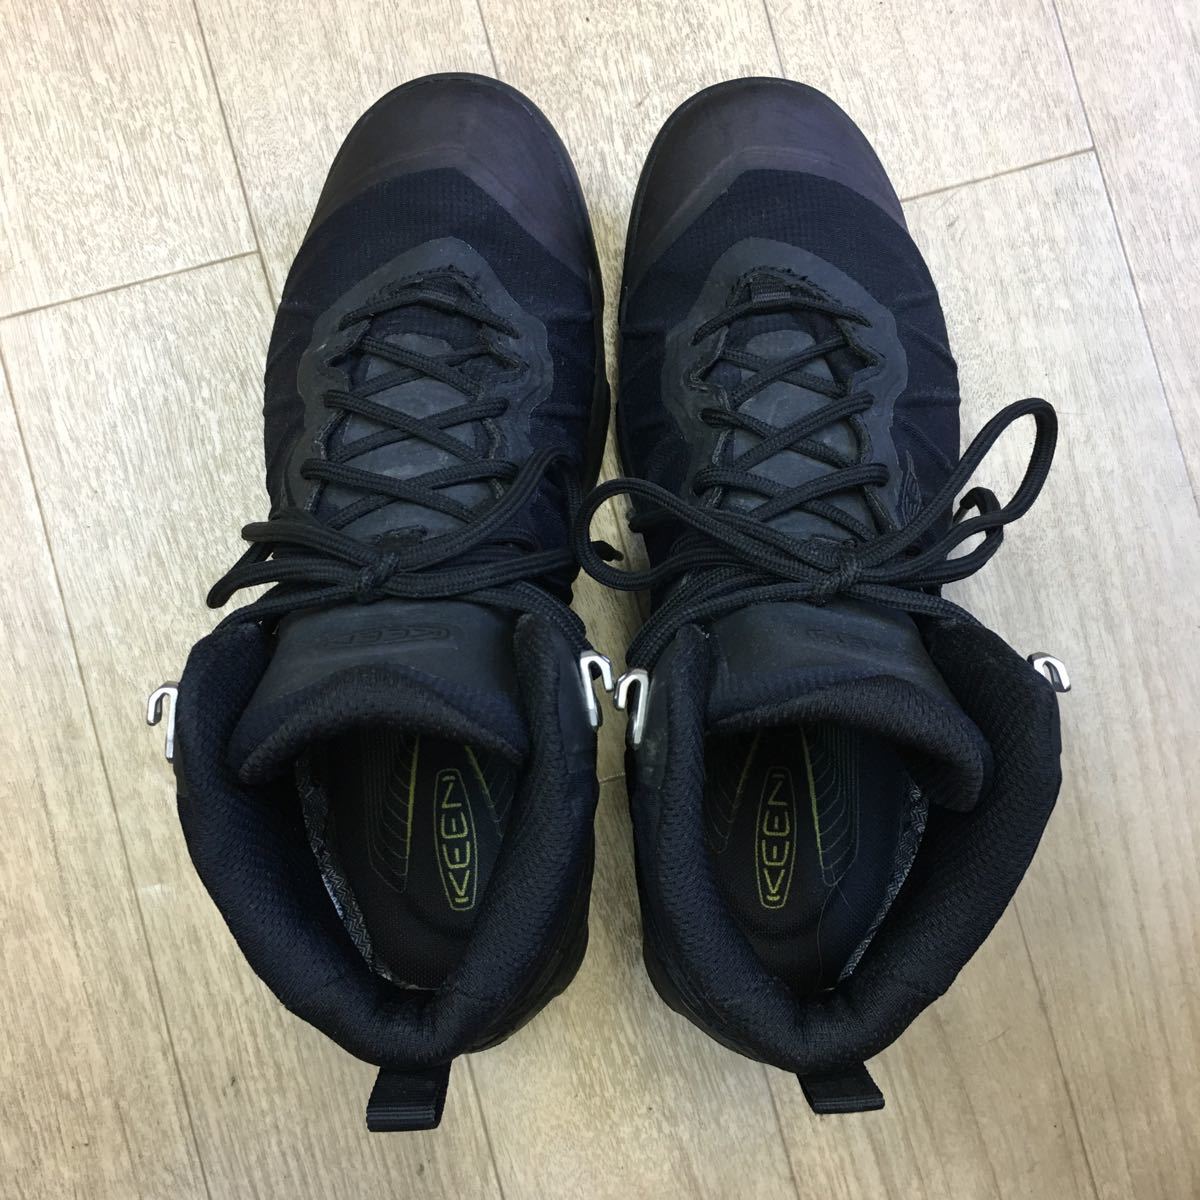 KEEN VENTURE MID WP водонепроницаемый водонепроницаемый походная обувь ботинки 26.5cm чёрный затемненный дверь 